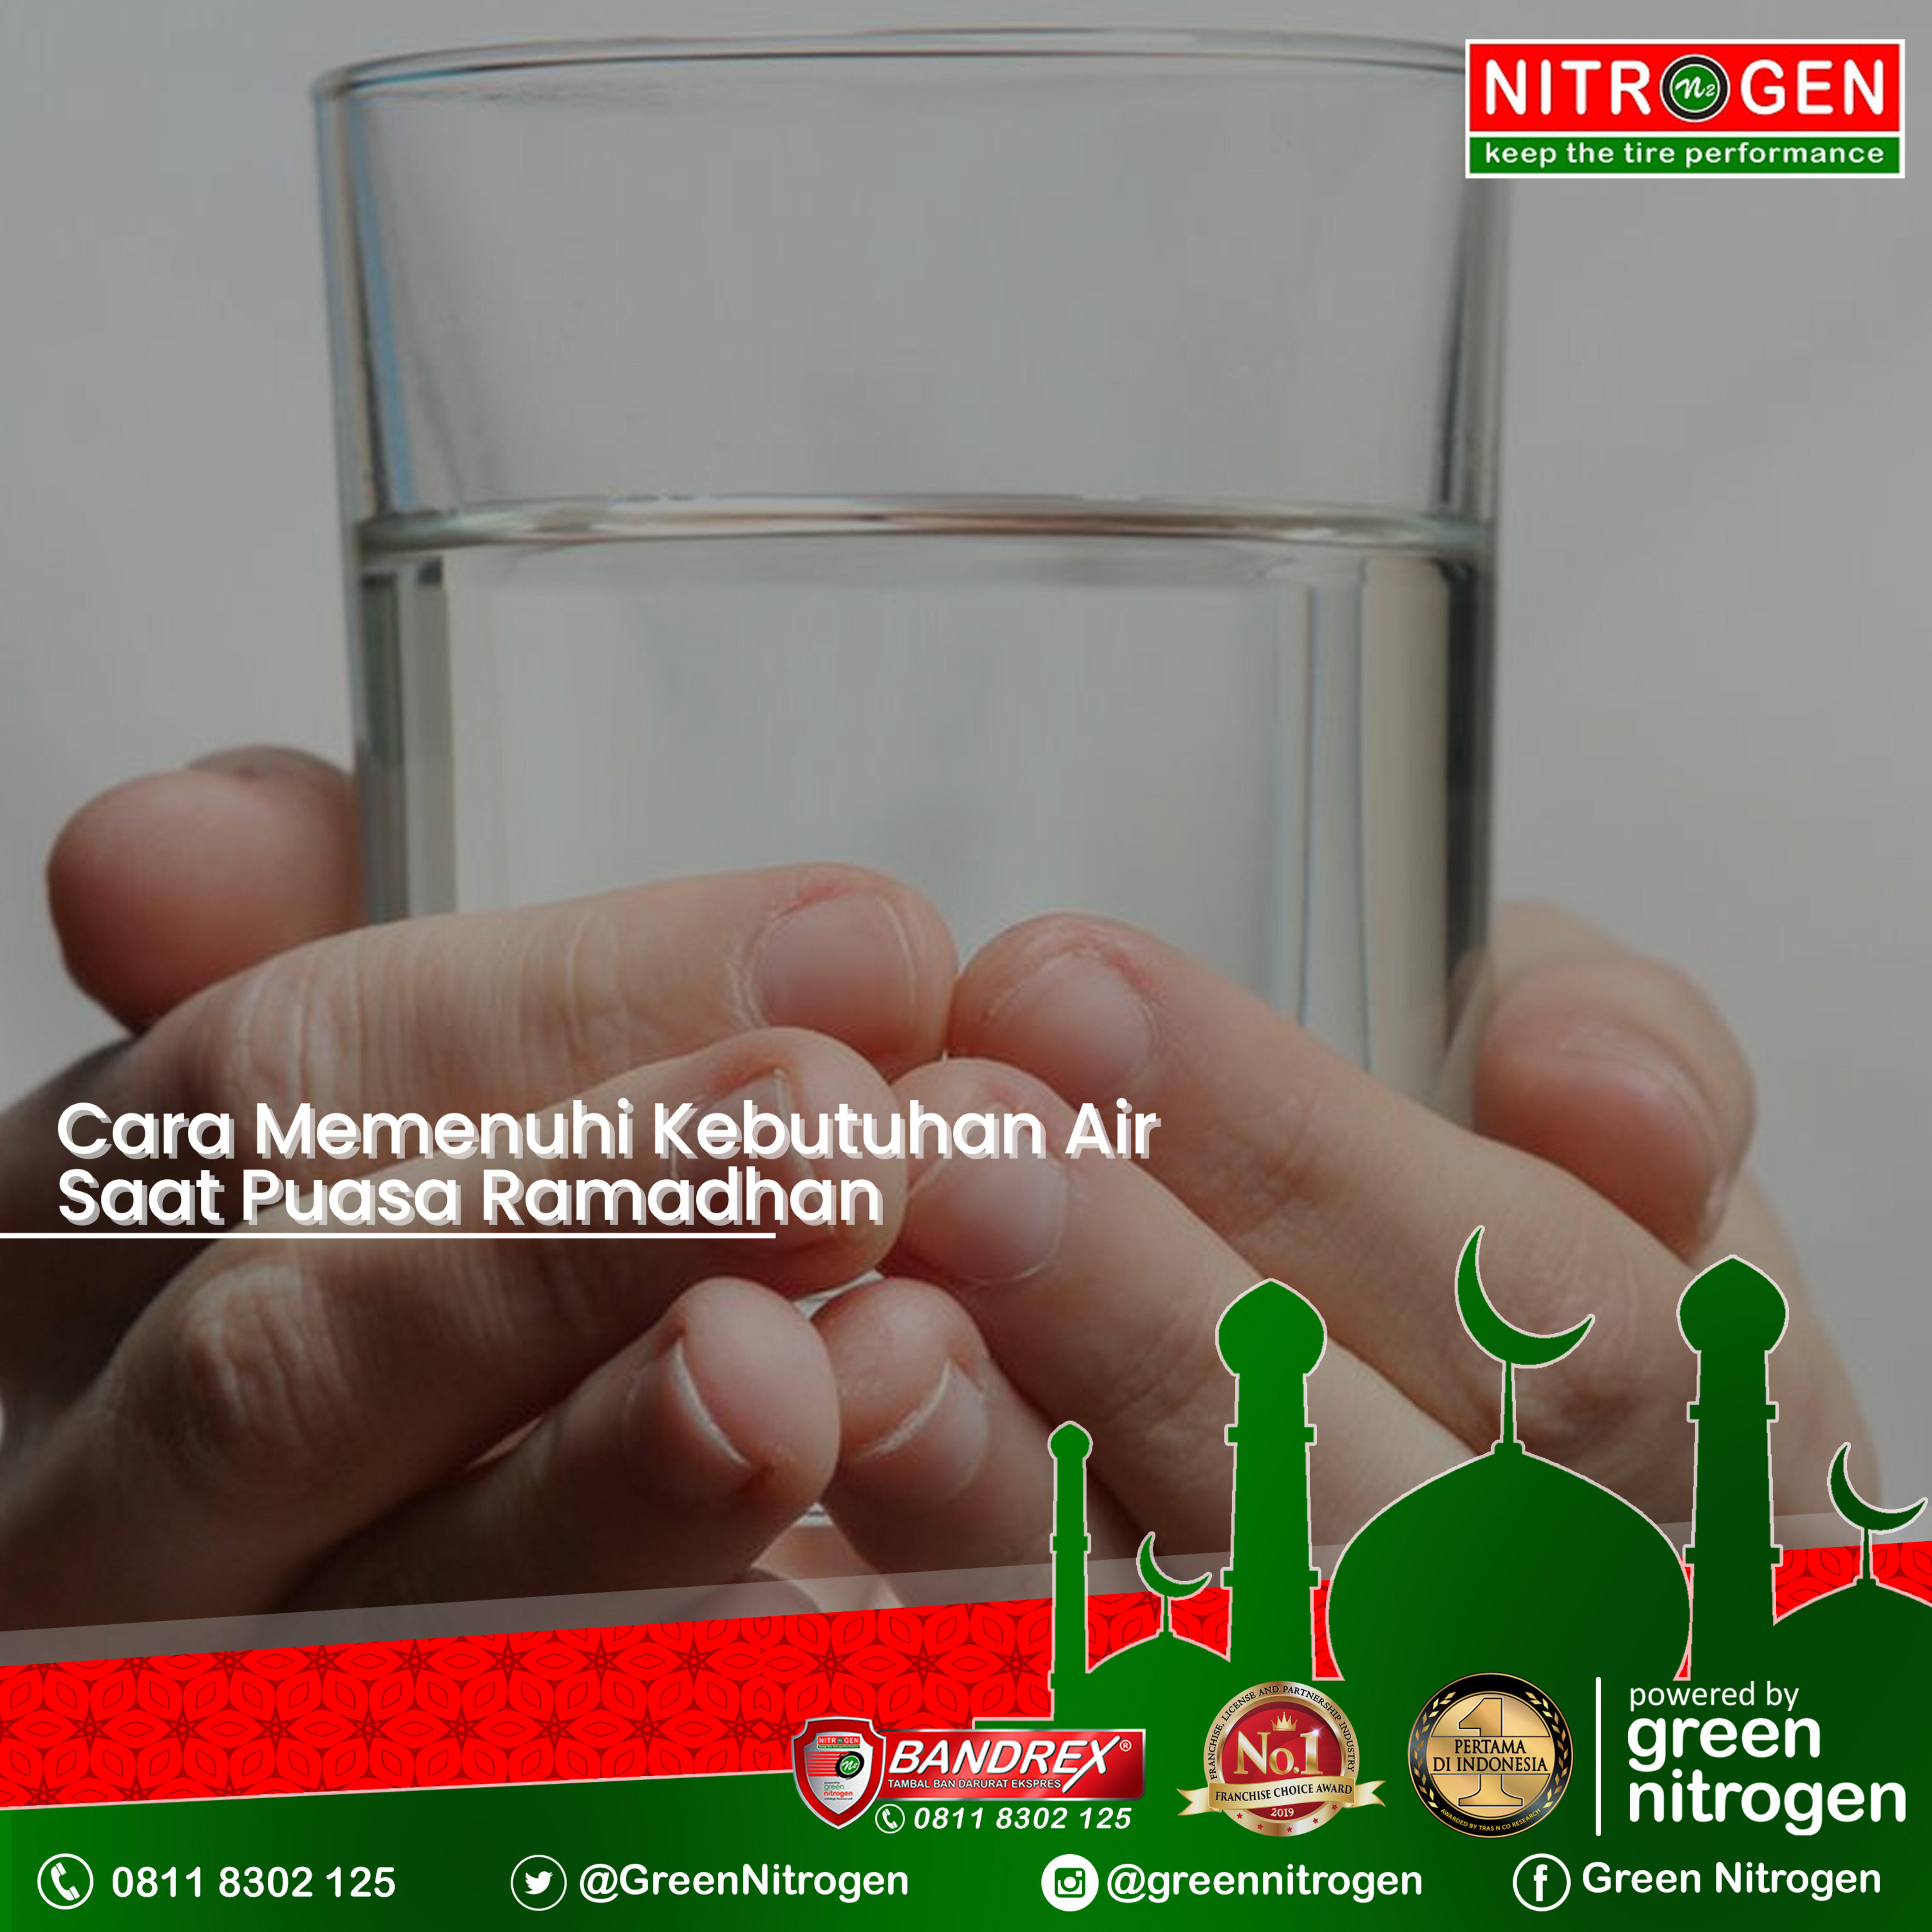 Cara Memenuhi Kebutuhan Air Mineral Saat Puasa Ramadhan?>